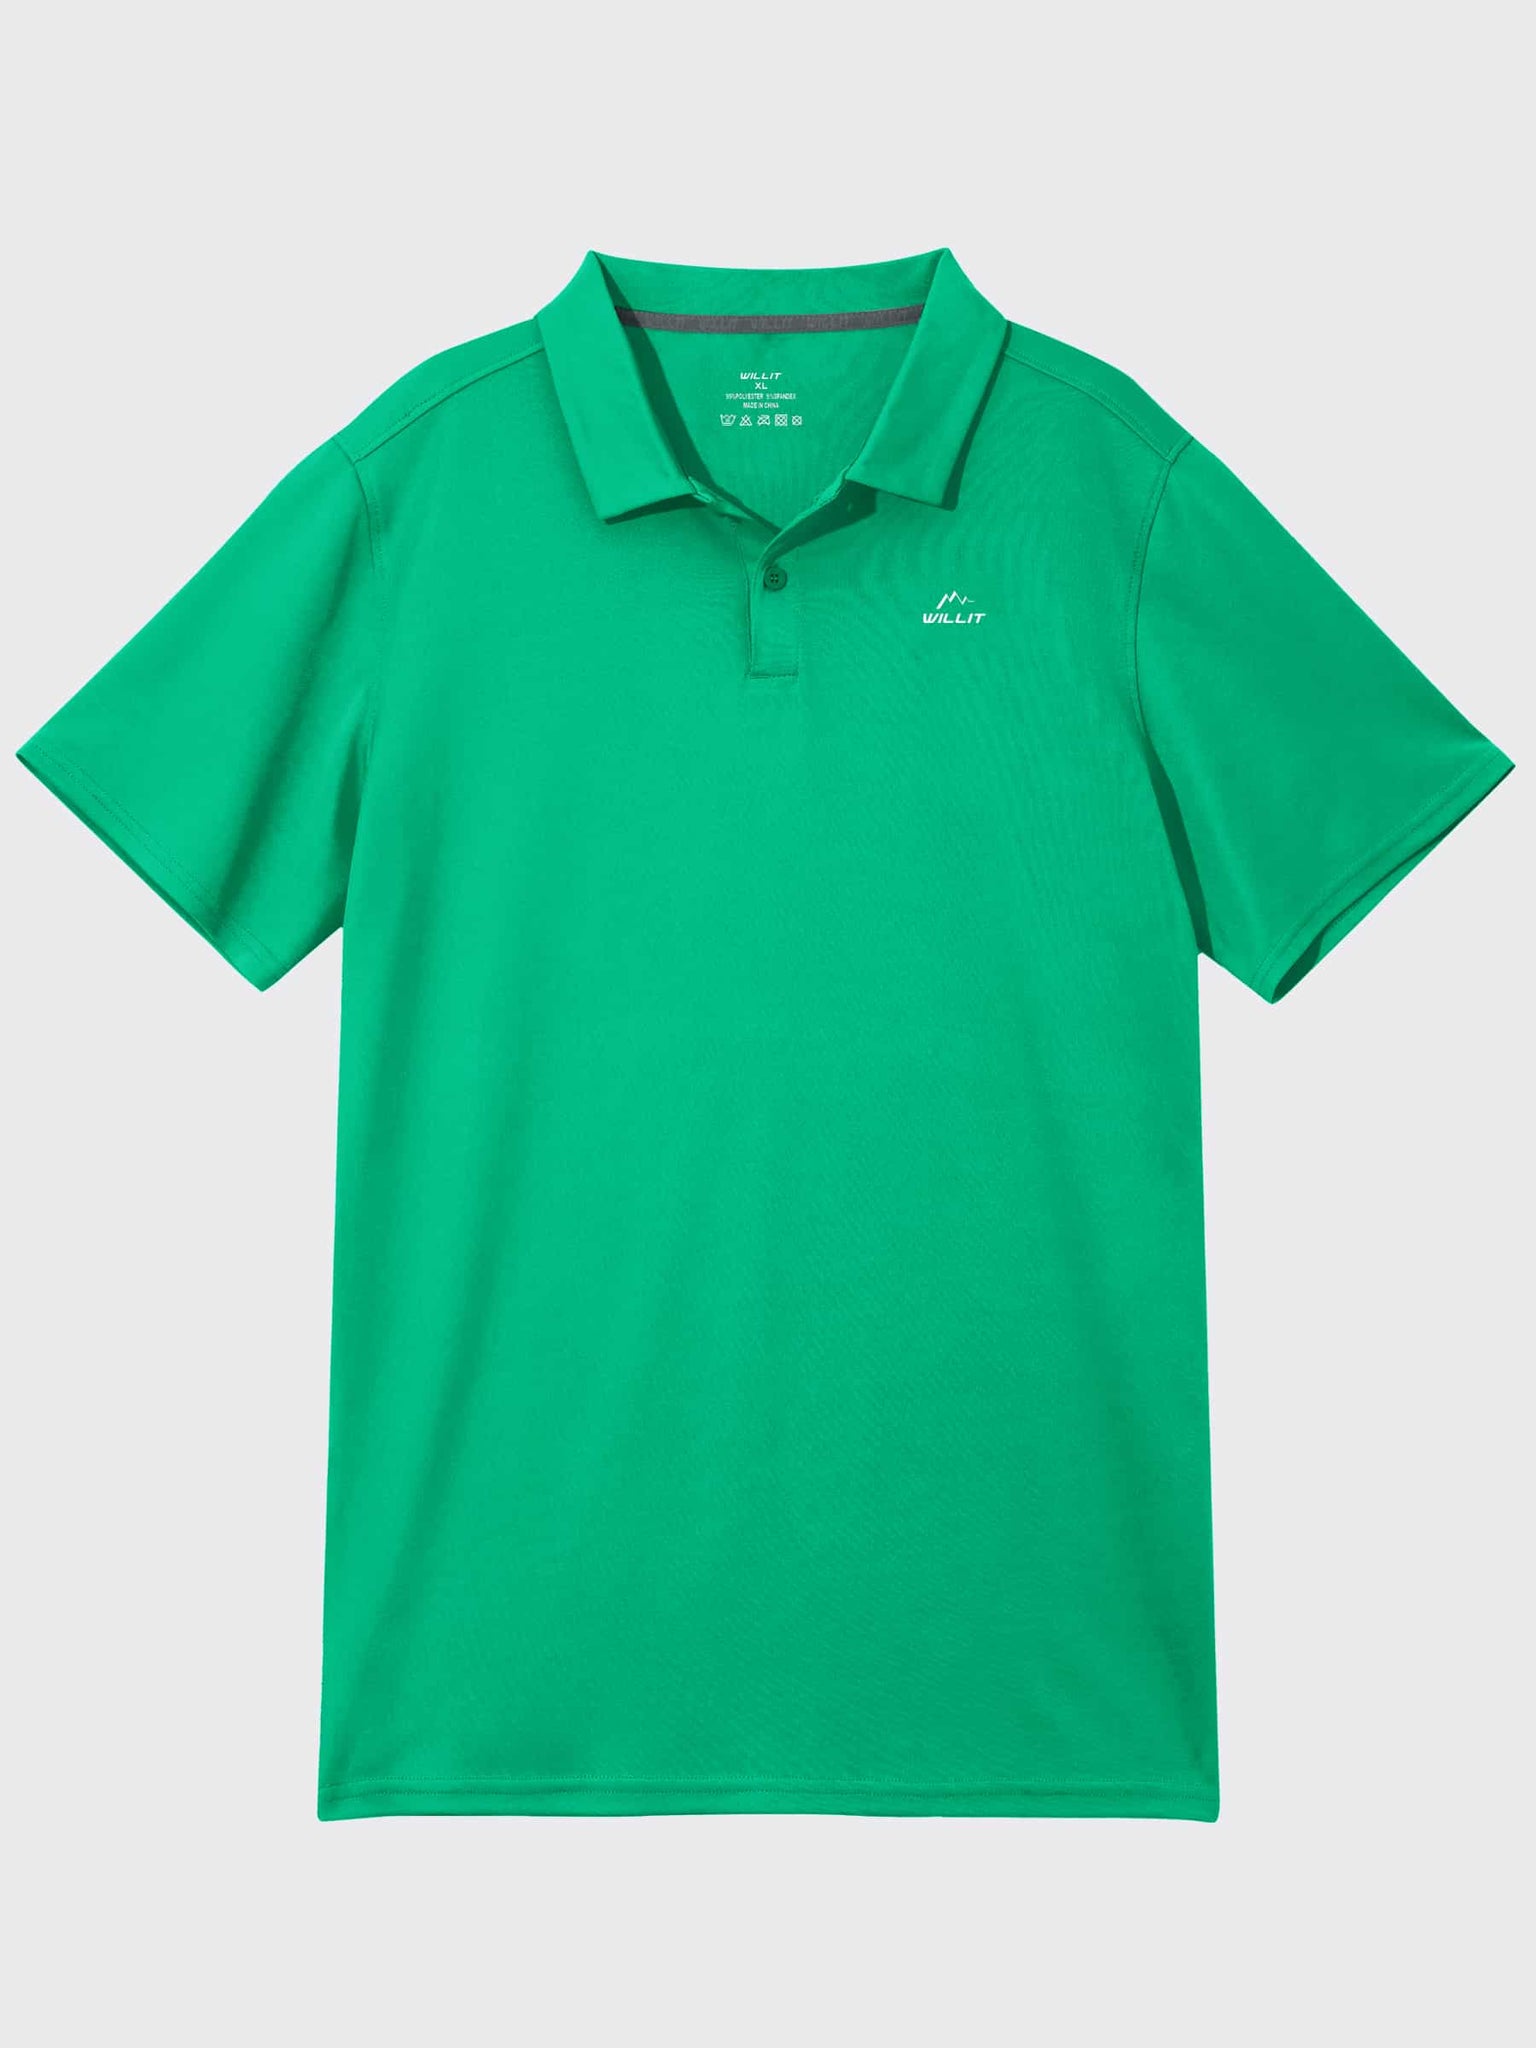 Youth Golf Polo Sun Shirts_Green_laydown4